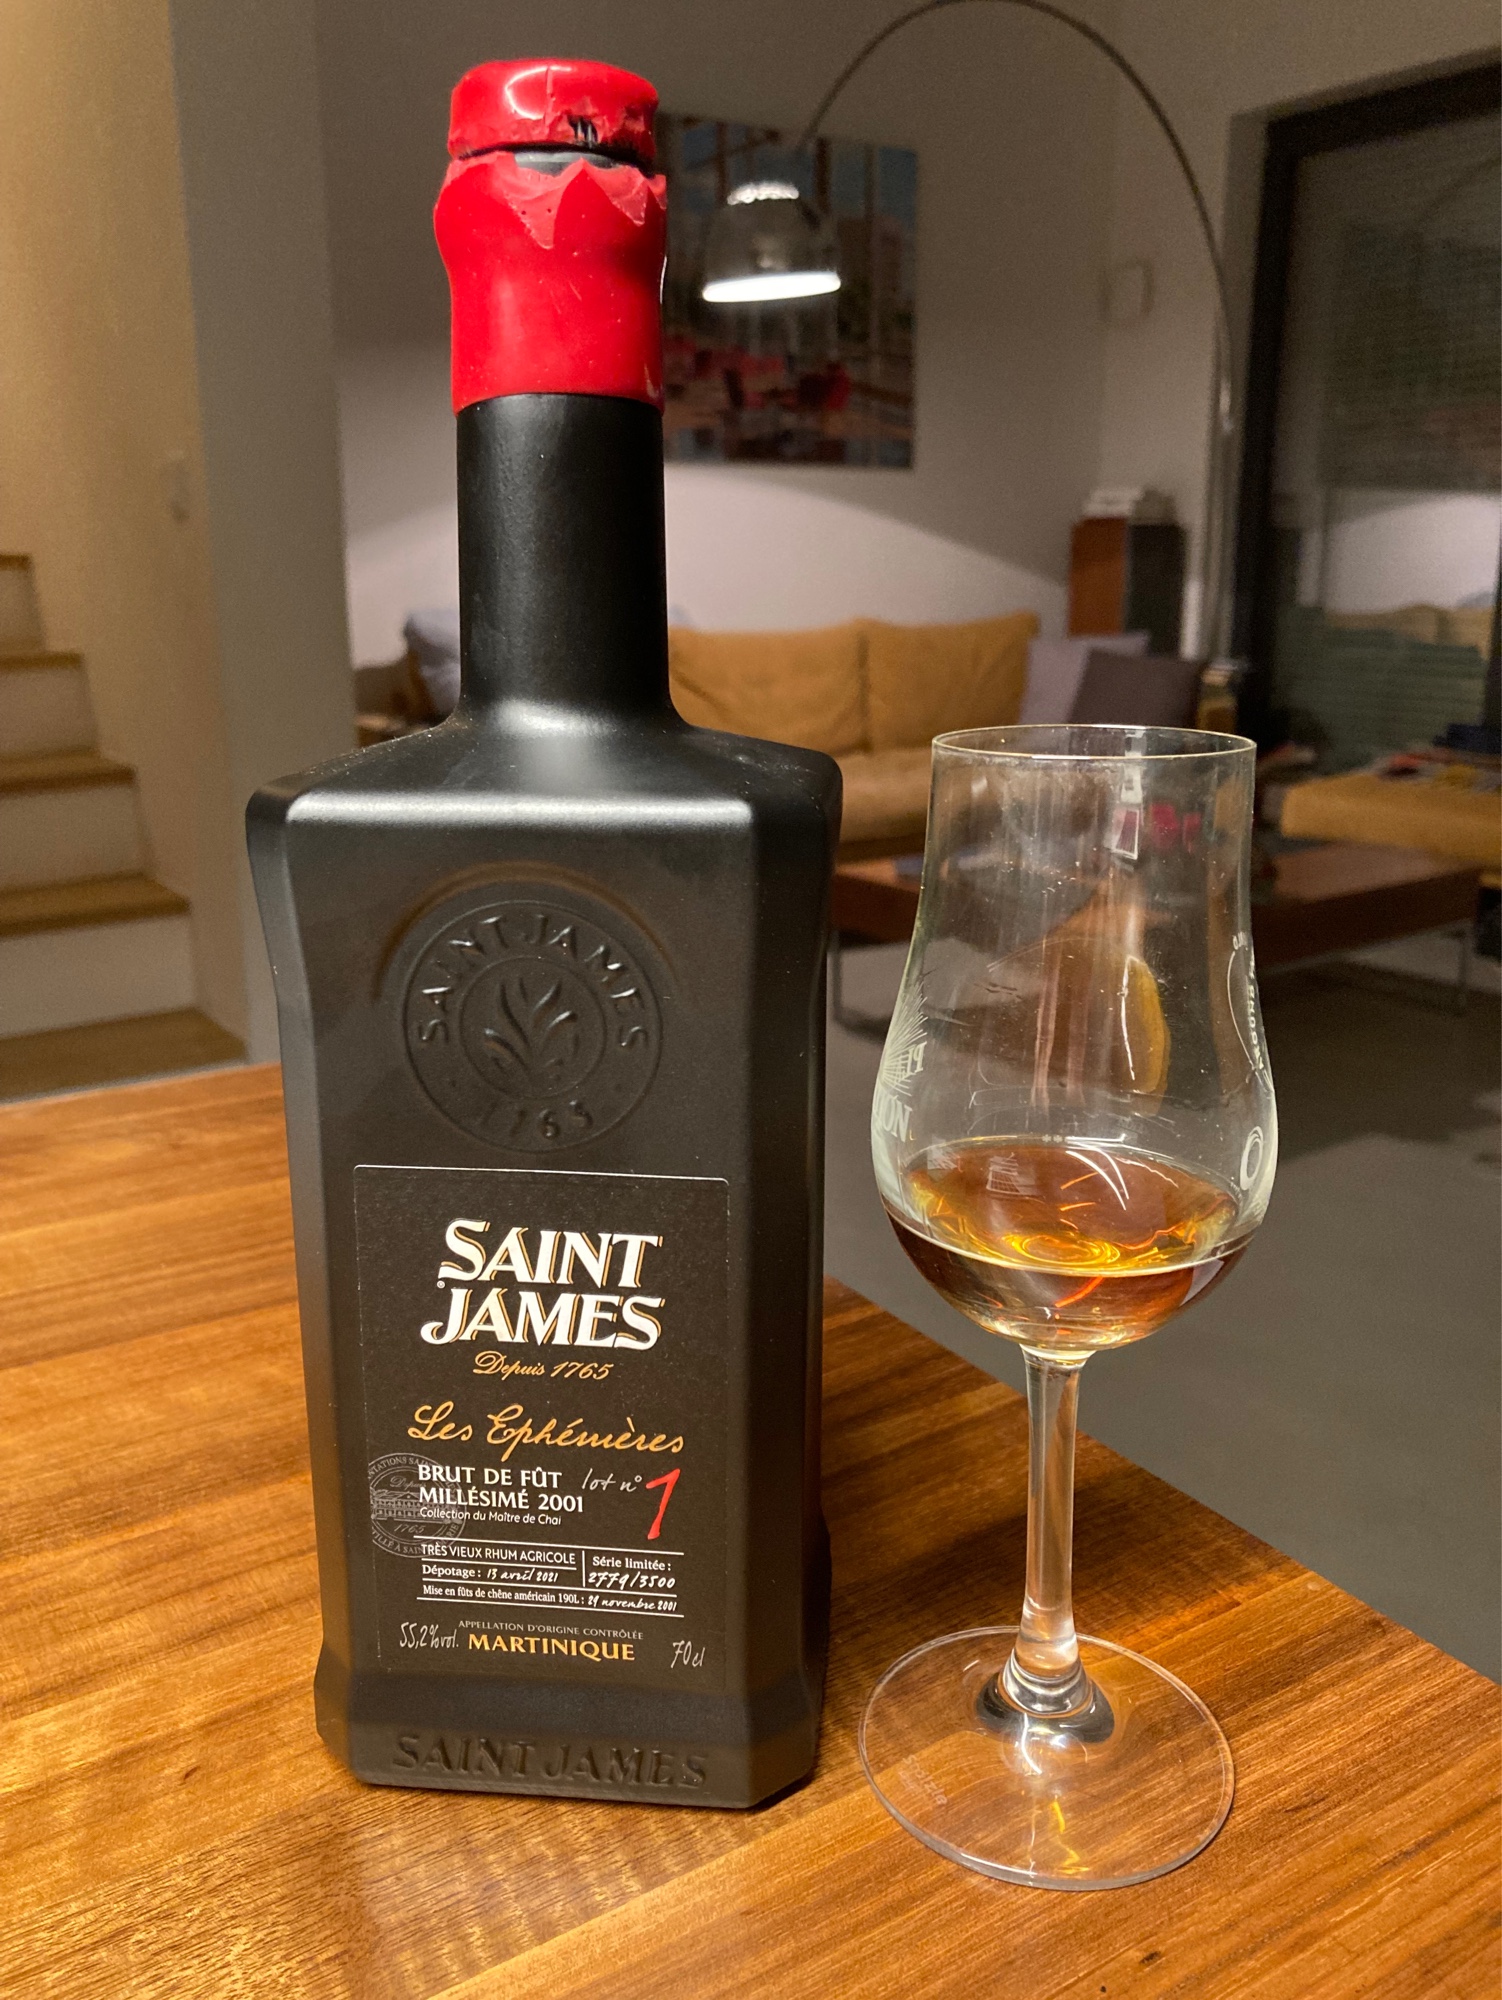 Photo of the bottle taken from user Johannes